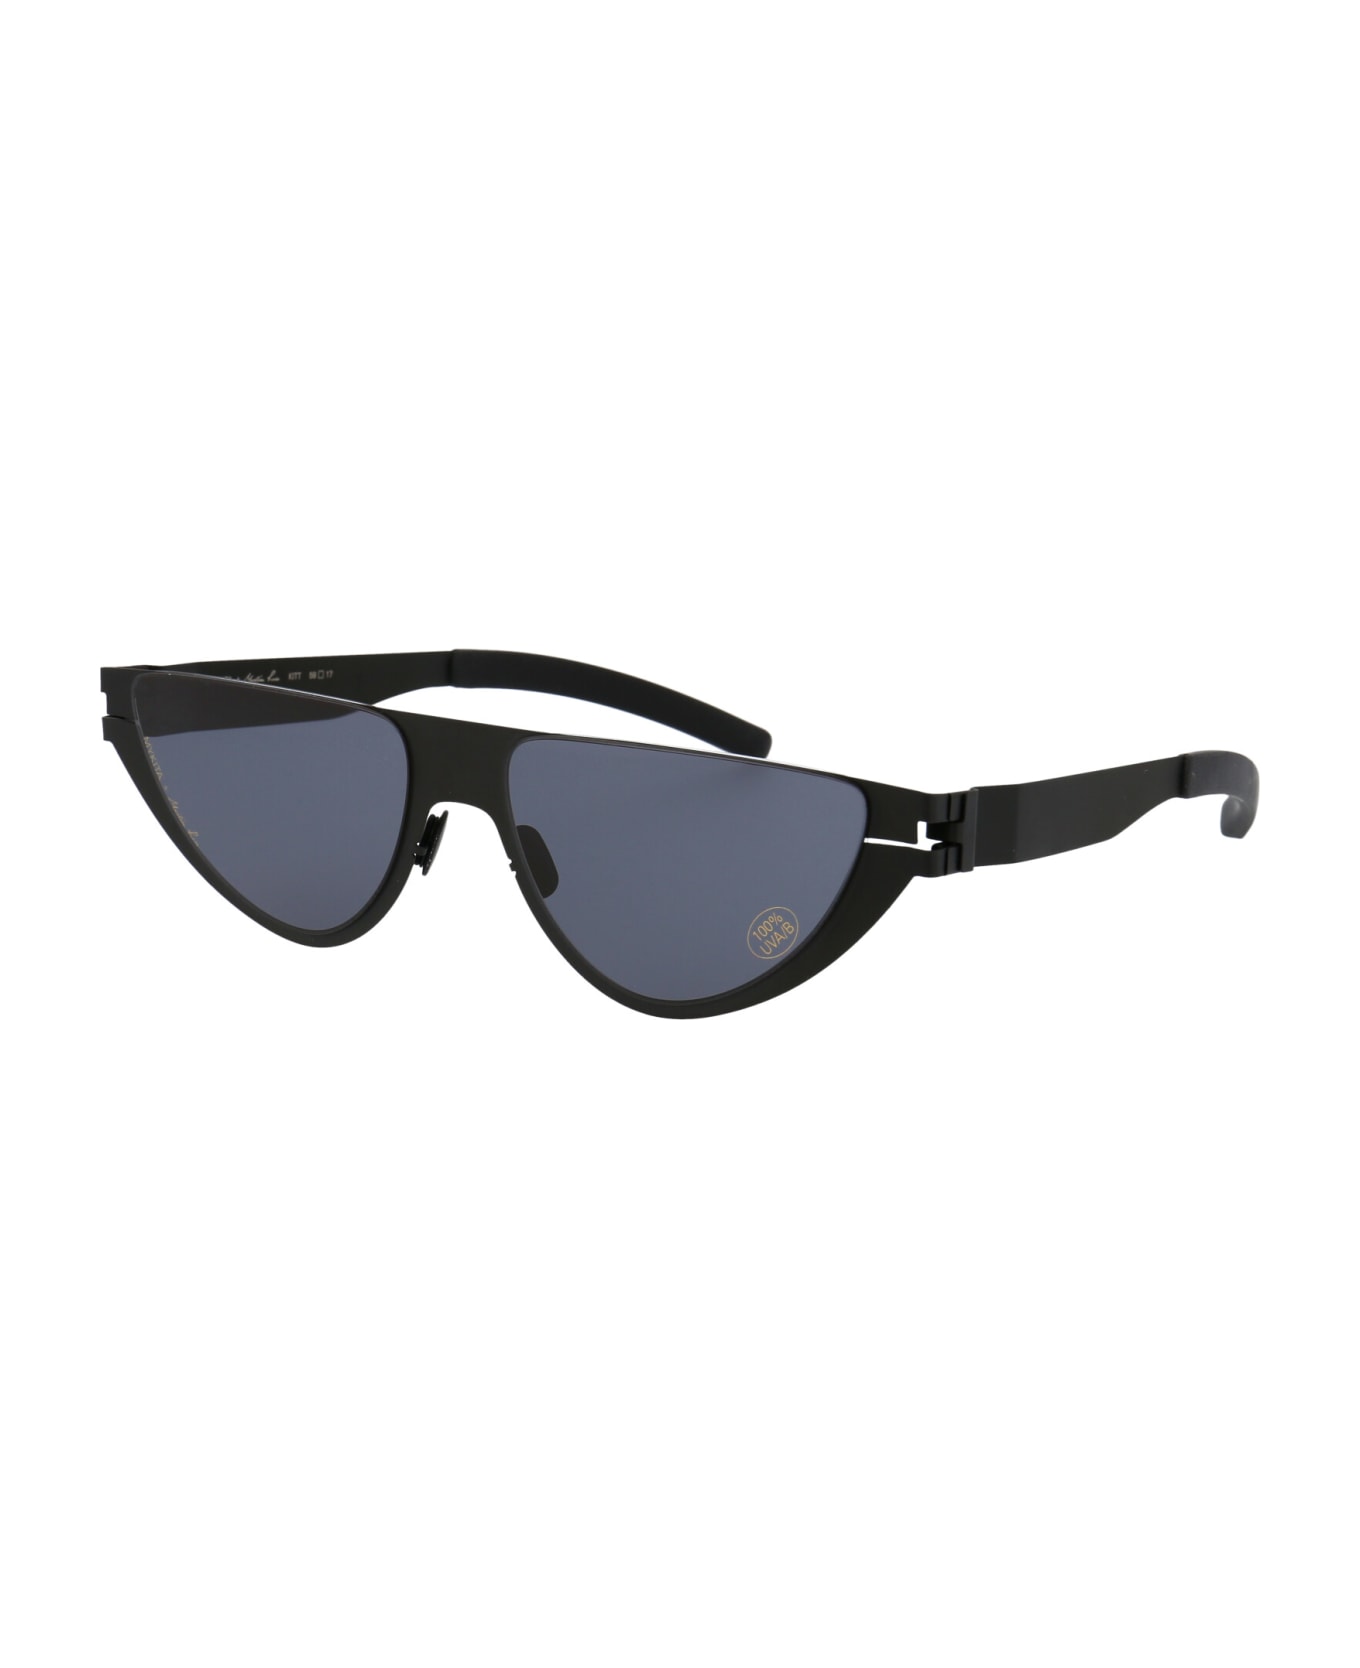 Mykita Kitt Sunglasses - 002 BLACK DARKGREY SOLID サングラス